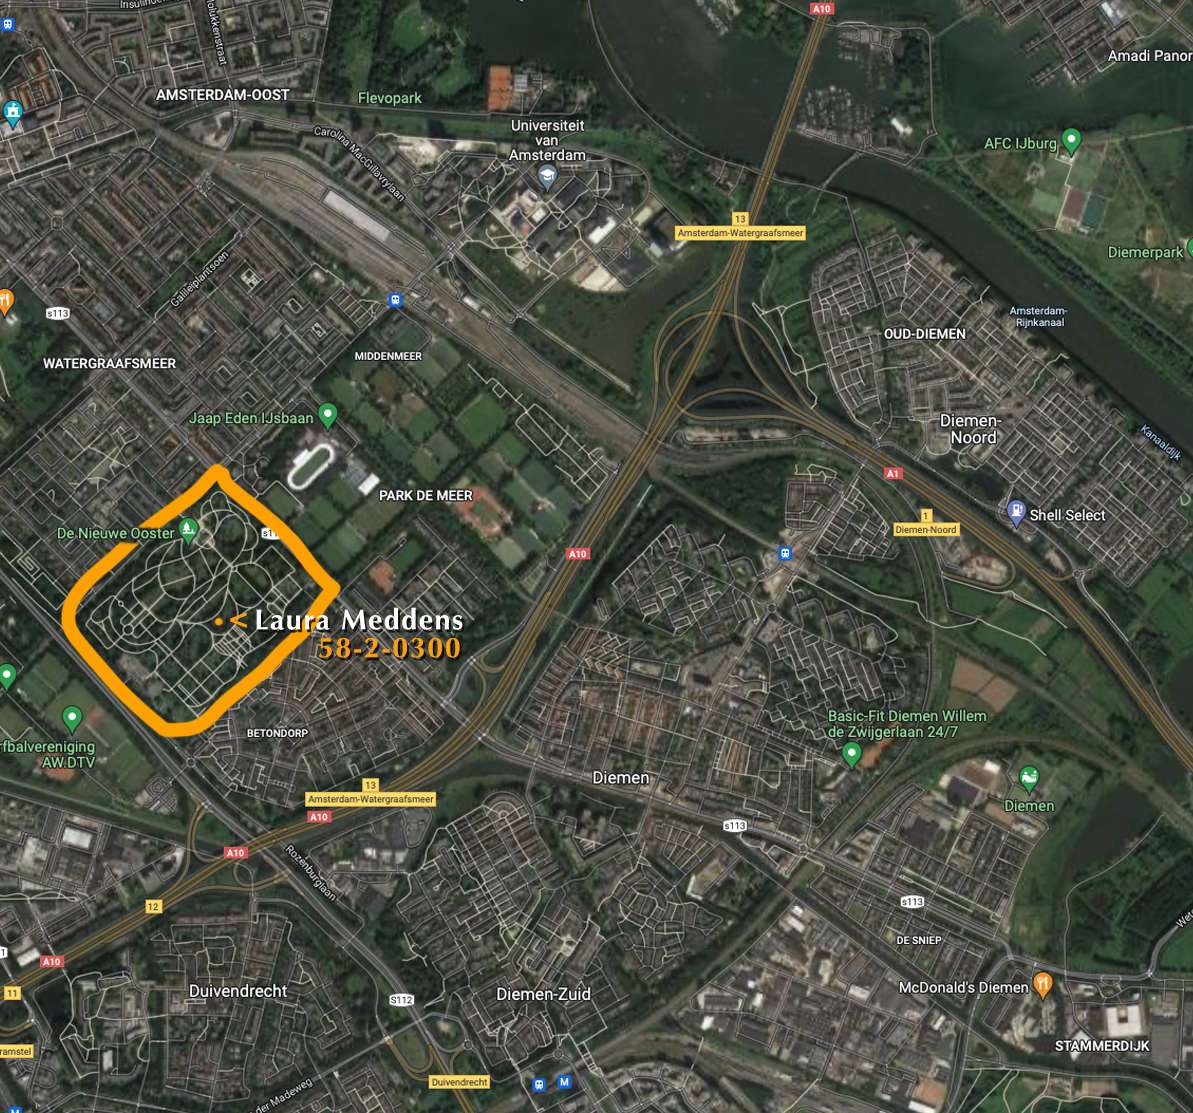 Aerial view of De Nieuwe Ooster Cemetery in Amsterdam